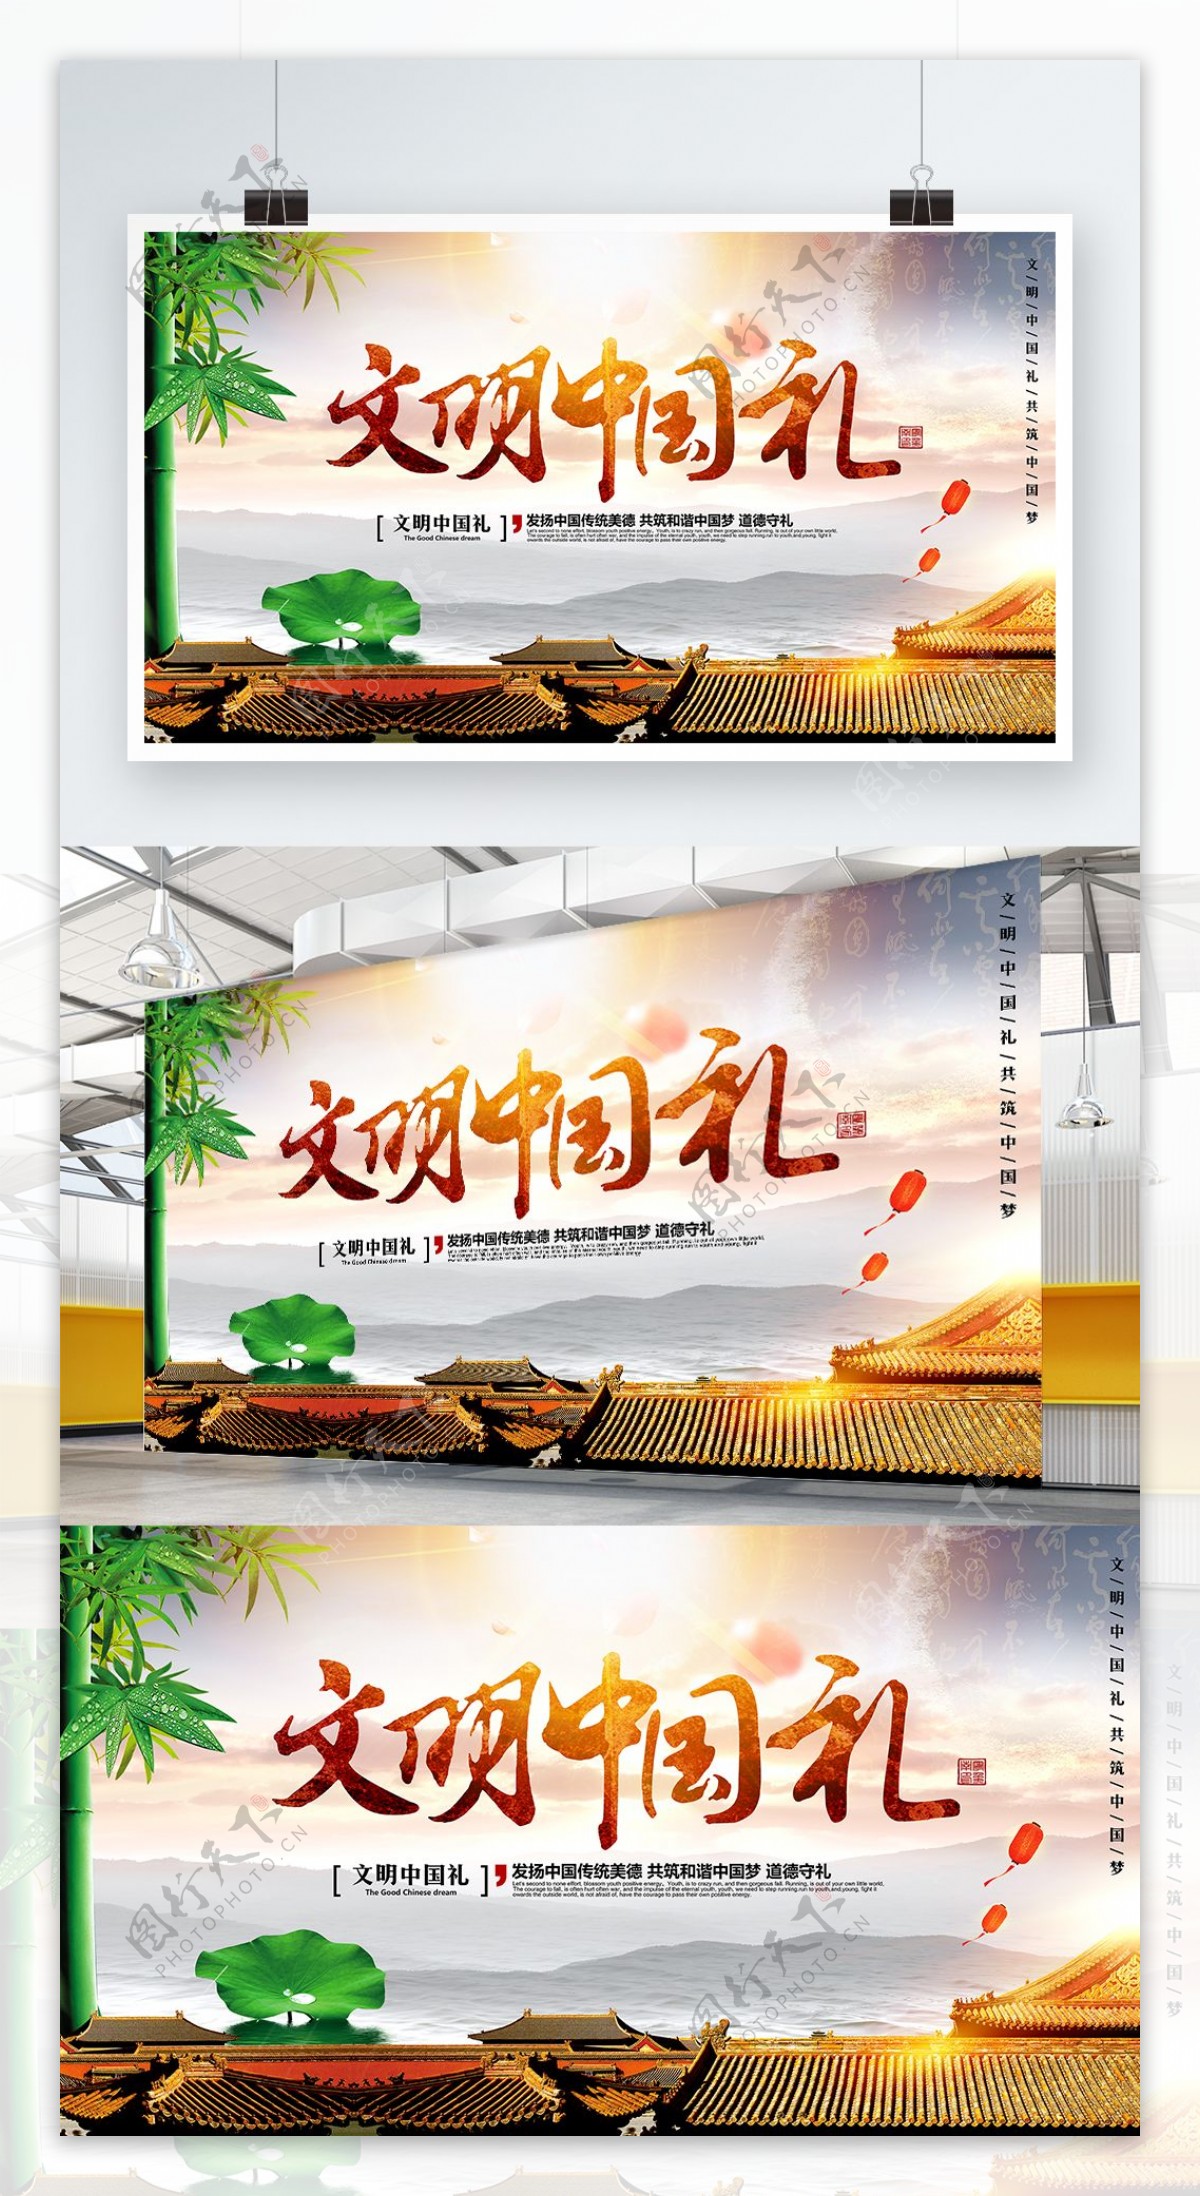 唯美大气中国风文明中国礼公益宣传海报设计